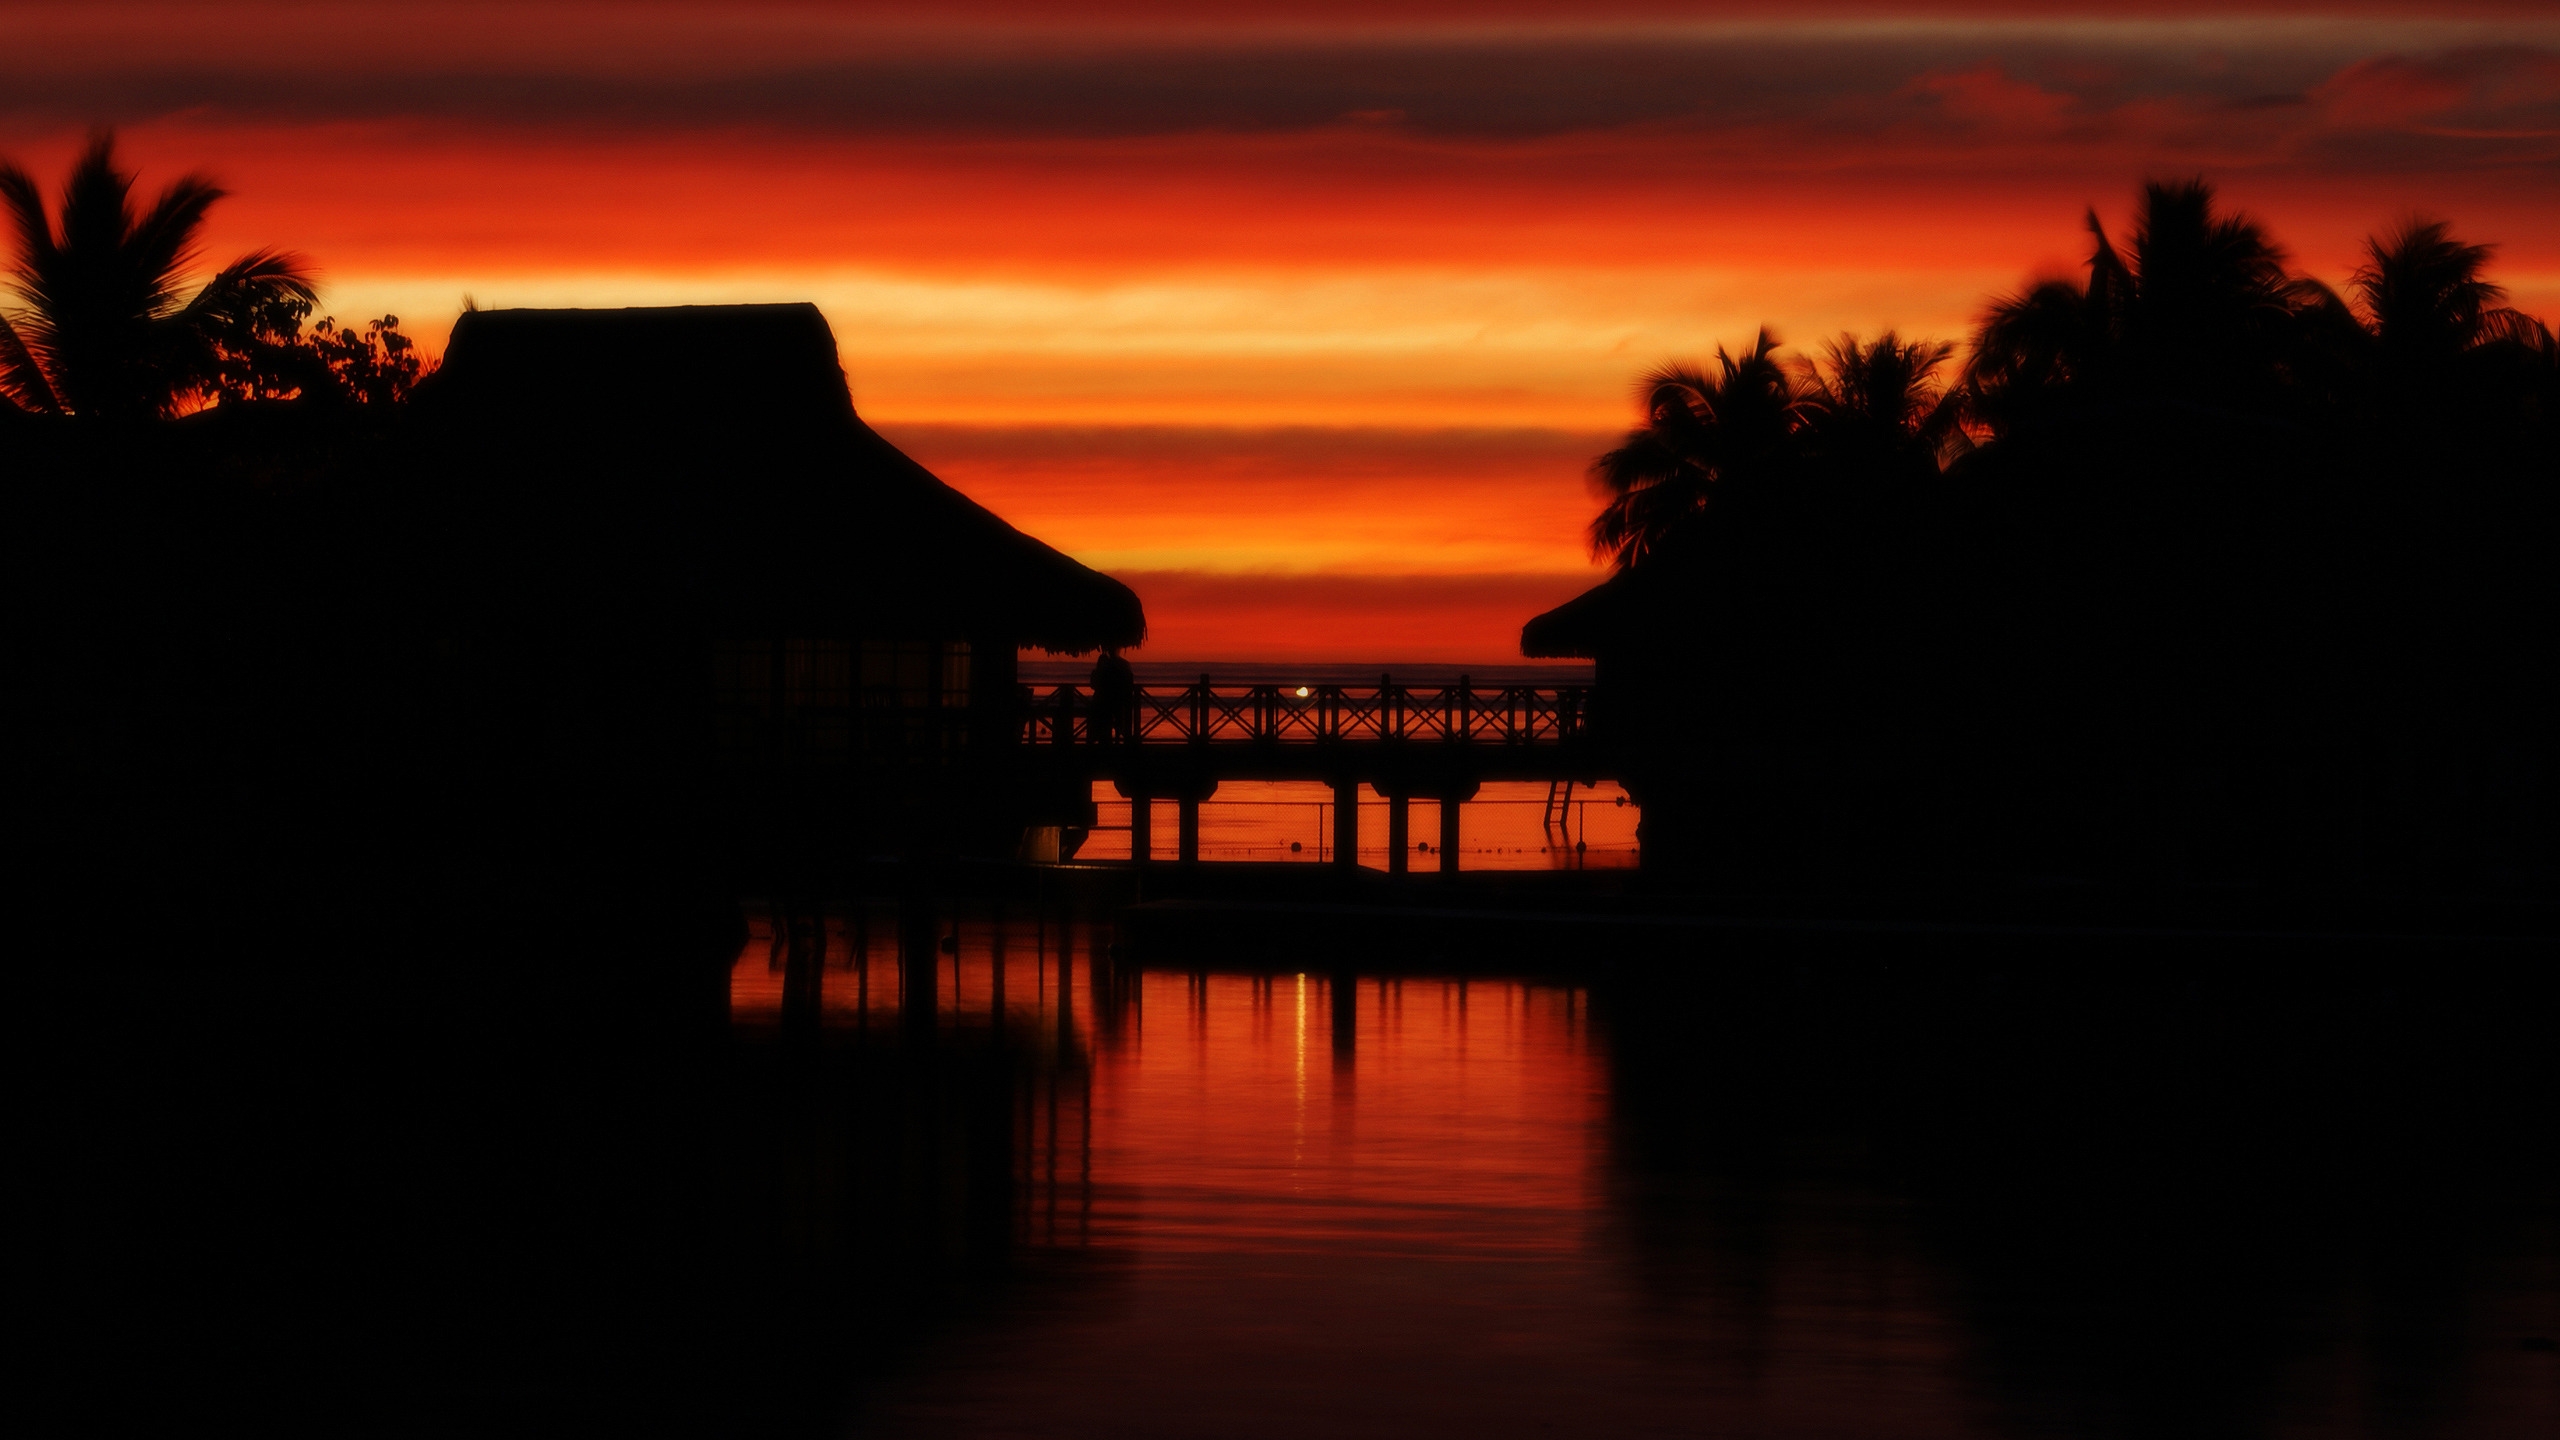 Moorea Sunset for 2560x1440 HDTV resolution